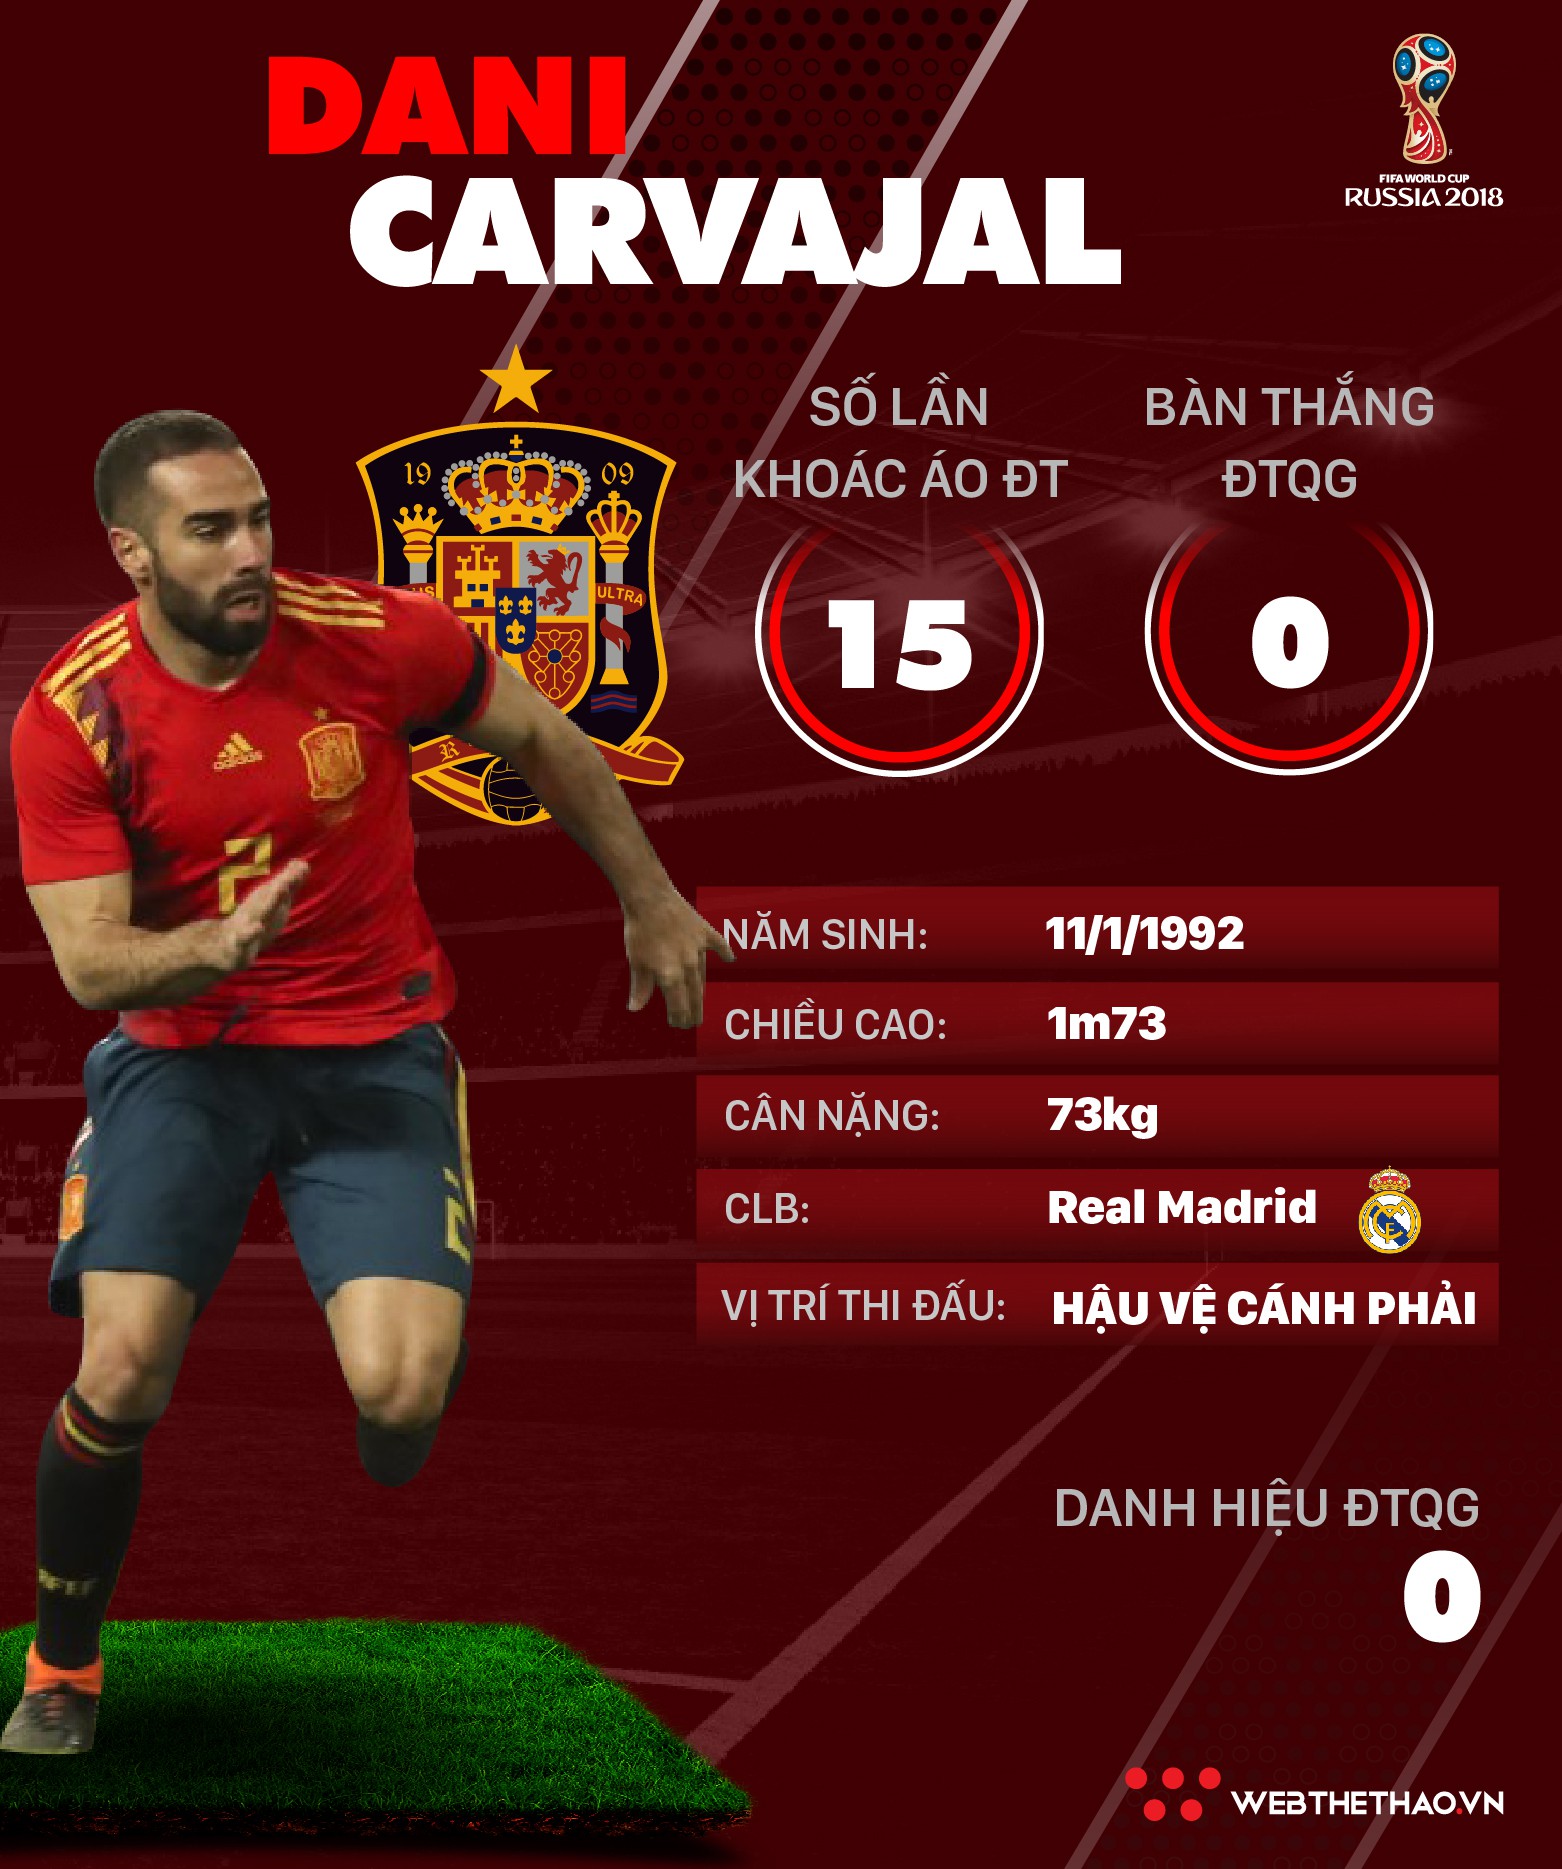 Thông tin cầu thủ Dani Carvajal của ĐT Tây Ban Nha dự World Cup 2018 - Ảnh 1.